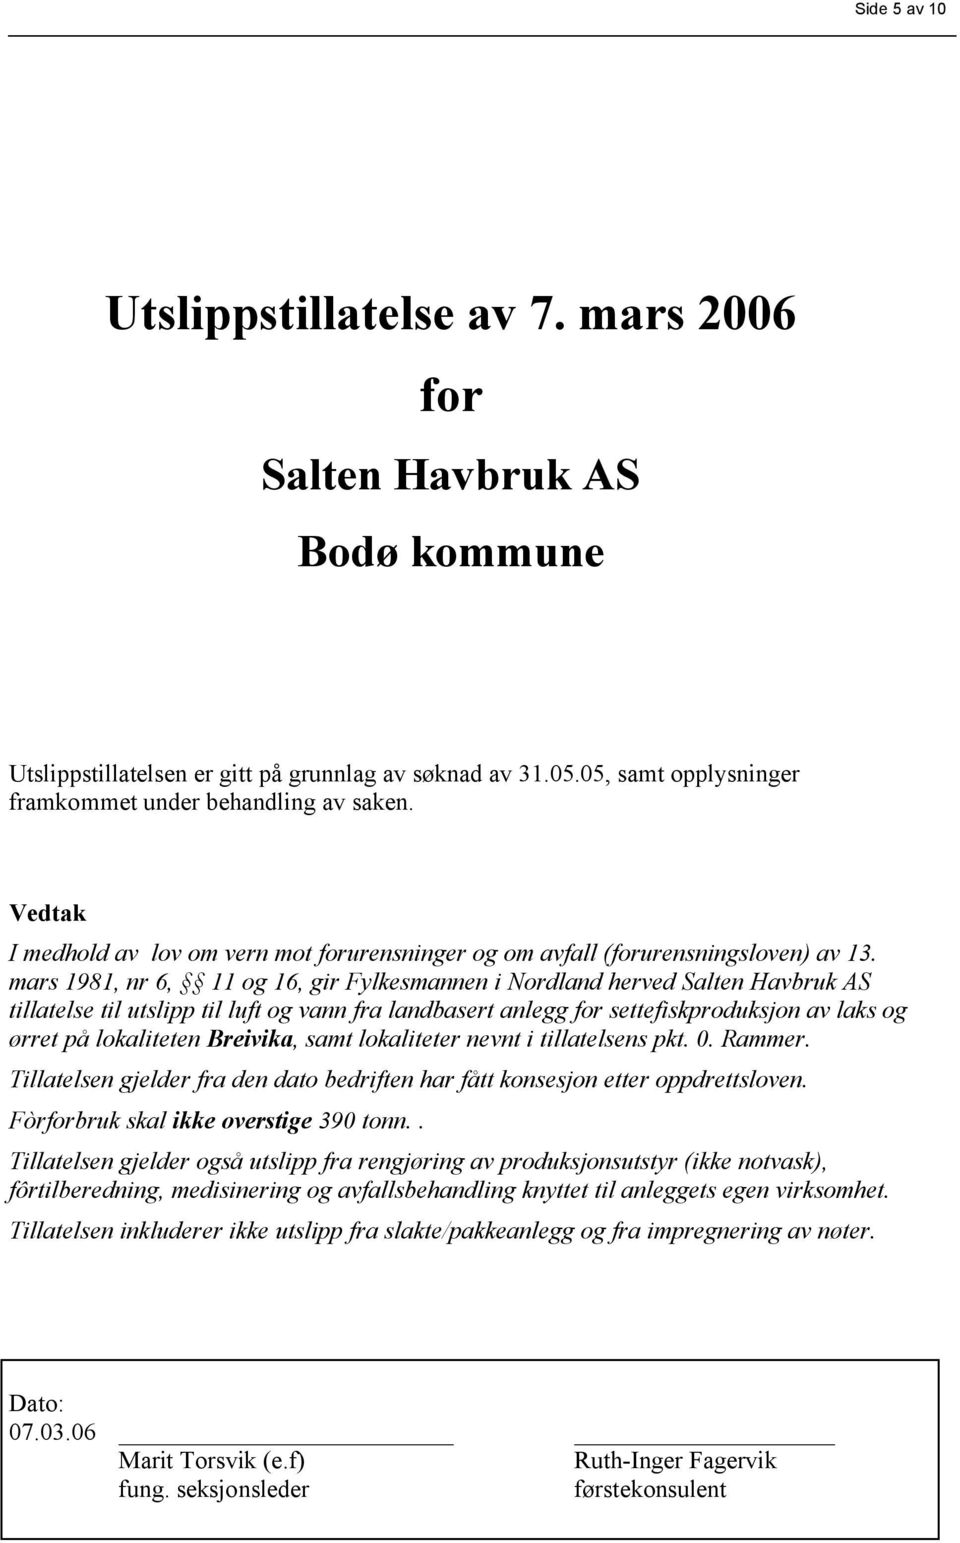 mars 1981, nr 6, 11 og 16, gir Fylkesmannen i Nordland herved Salten Havbruk AS tillatelse til utslipp til luft og vann fra landbasert anlegg for settefiskproduksjon av laks og ørret på lokaliteten